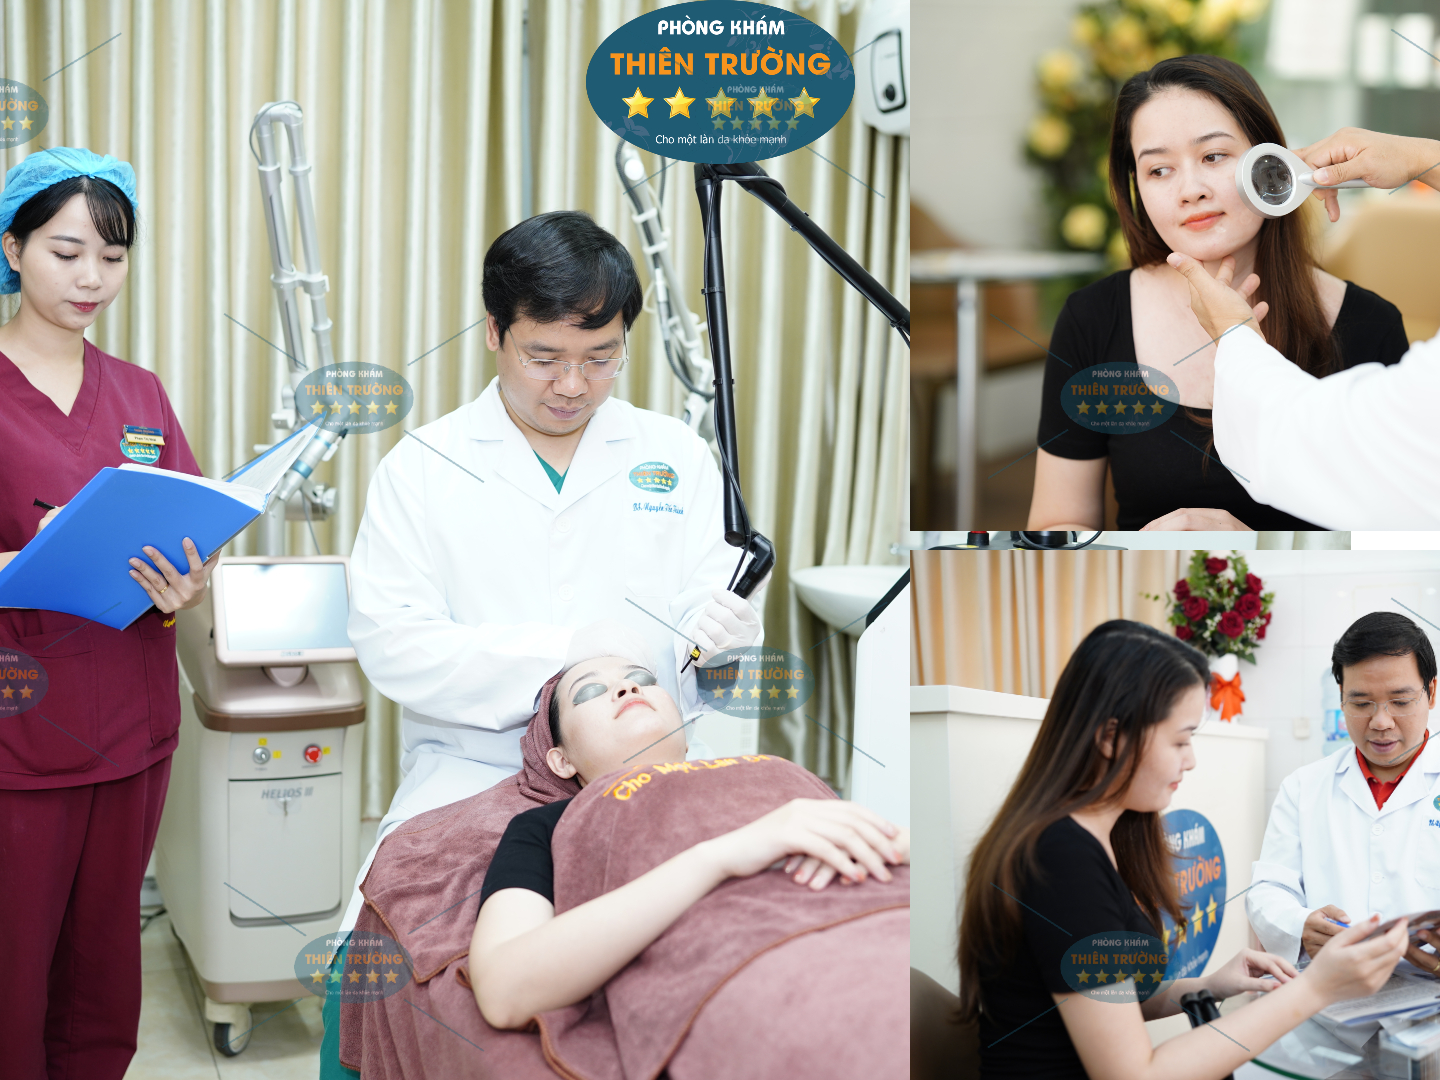 Hình ảnh: Thạc sĩ- Bác sĩ CK II Nguyễn Tiến Thành đang trị nám cho bệnh nhân.